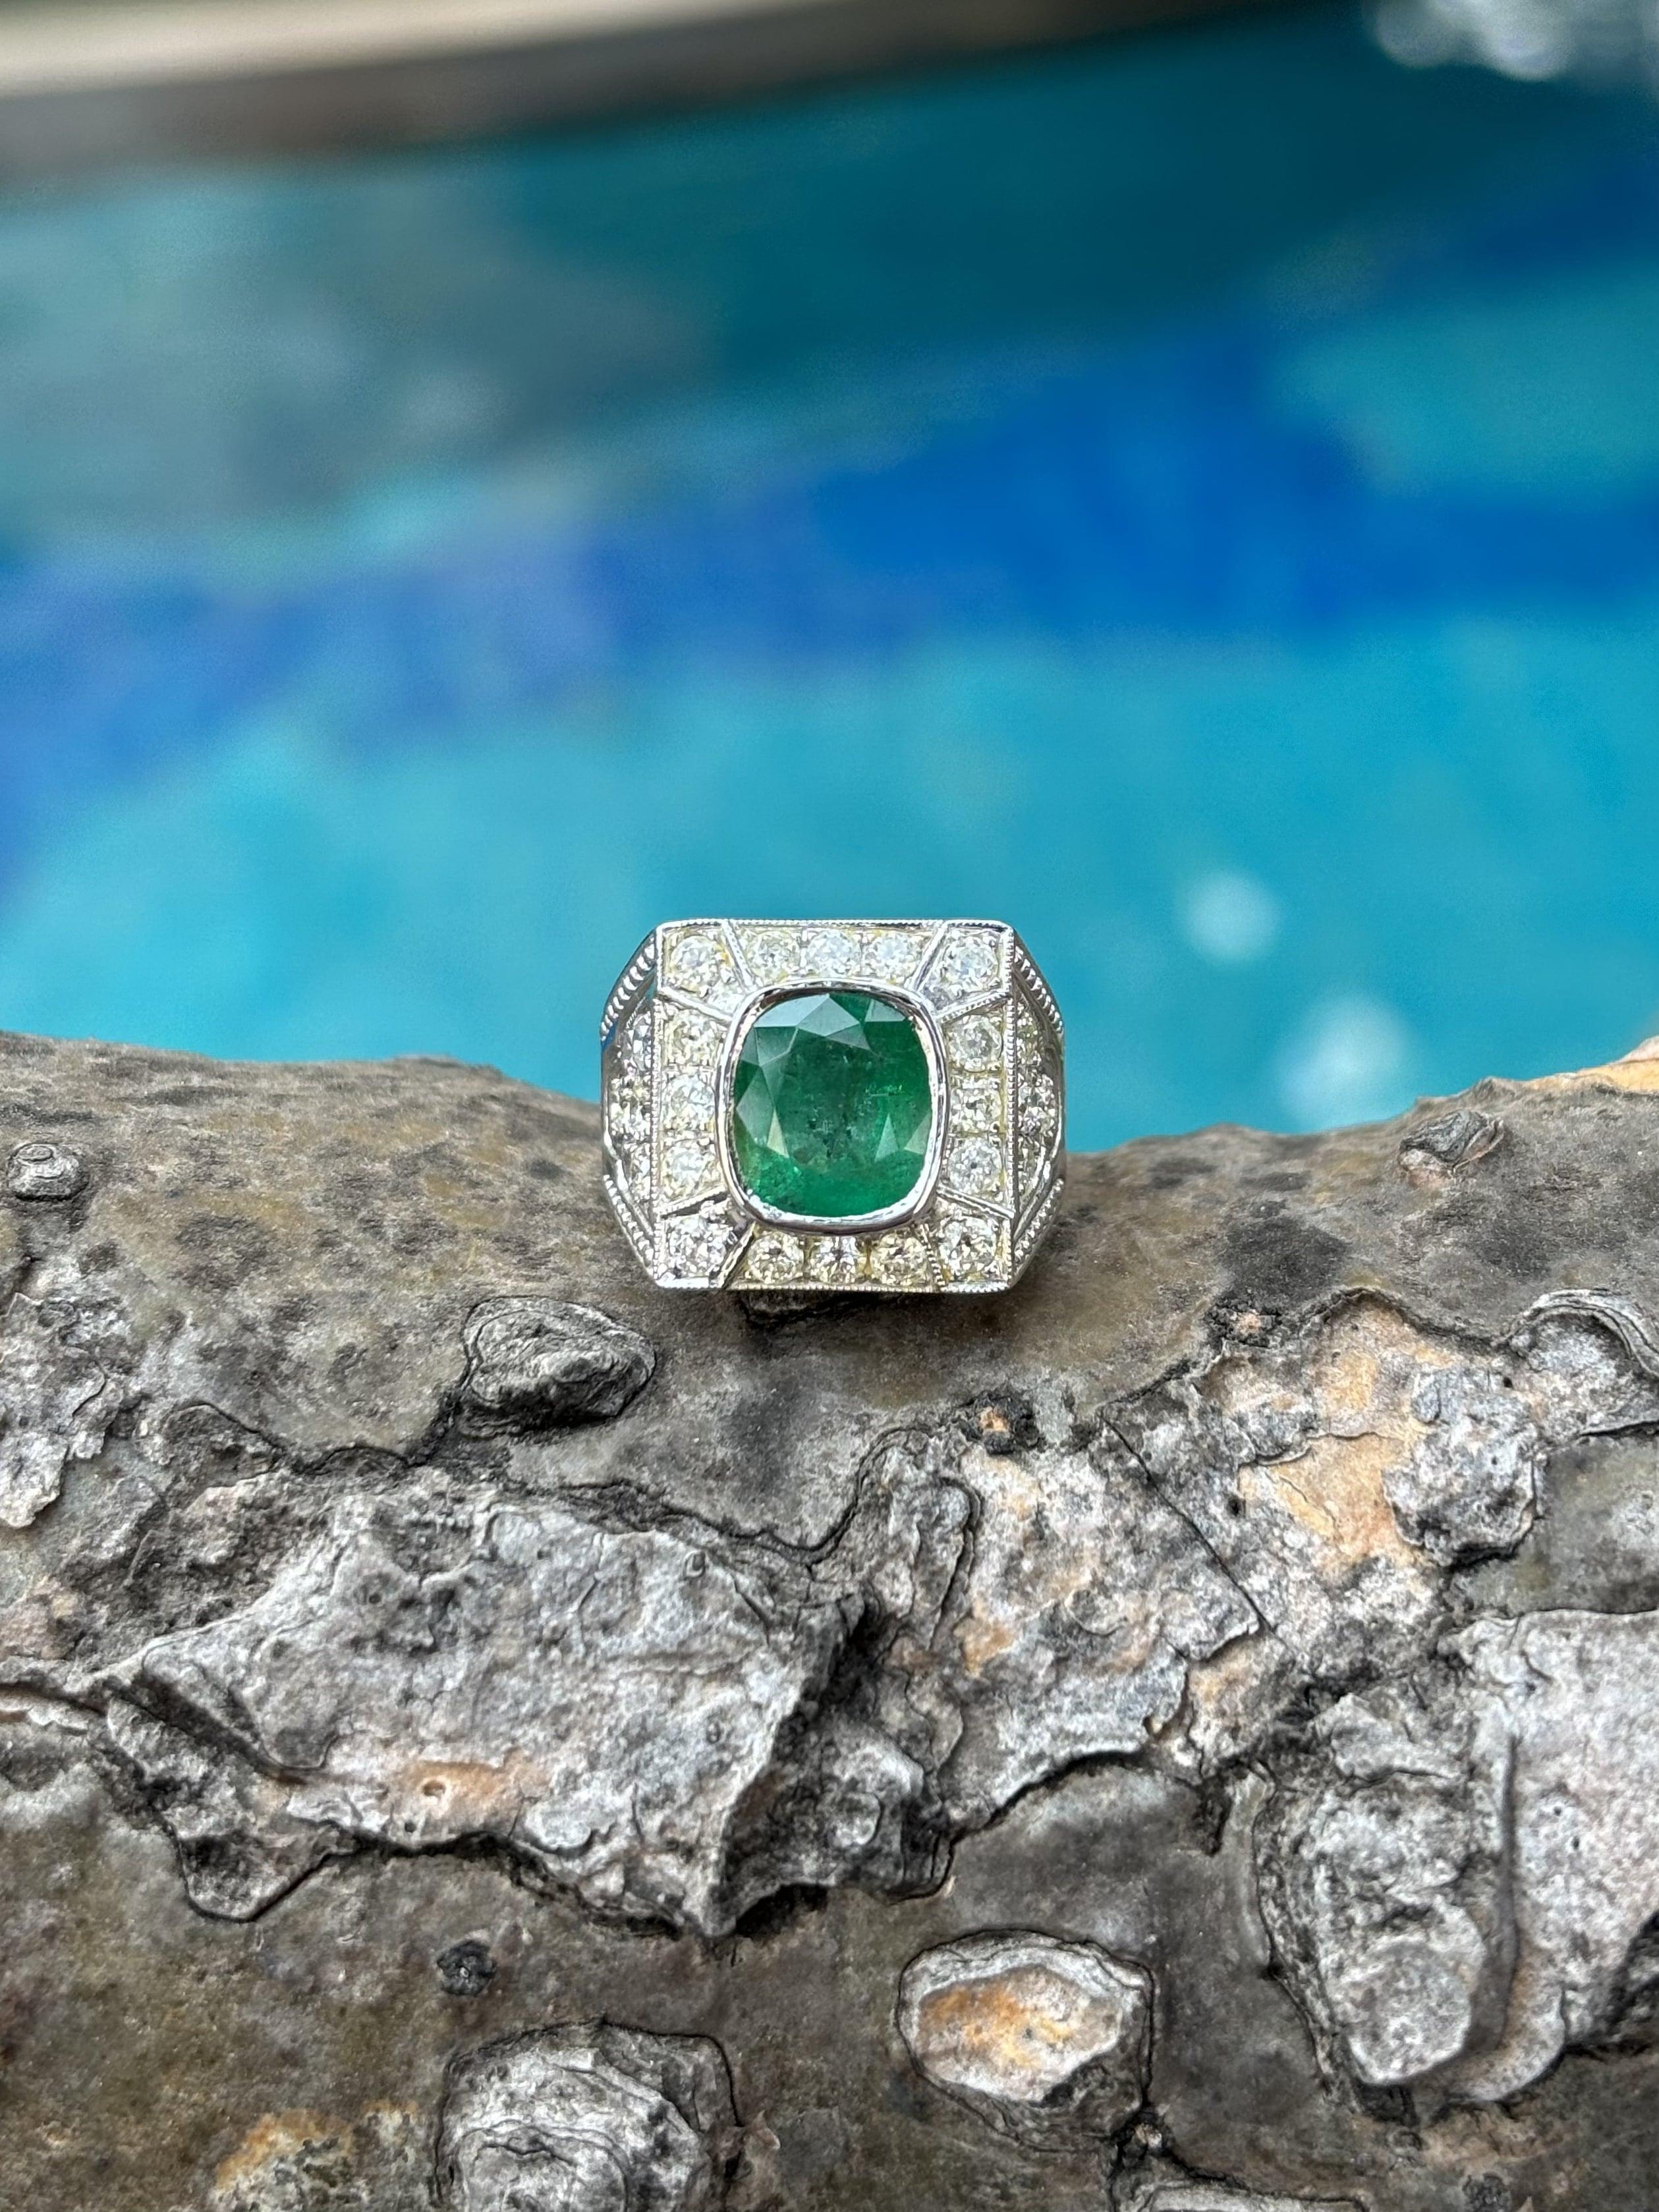 Der Inbegriff von Luxus und Raffinesse ist der atemberaubende, vom Art Deco inspirierte Emerald Statement Ring, ein wahres Wunderwerk in der Welt des edlen Schmucks. Dieses extravagante, mit Präzision und Leidenschaft gefertigte Stück strahlt aus